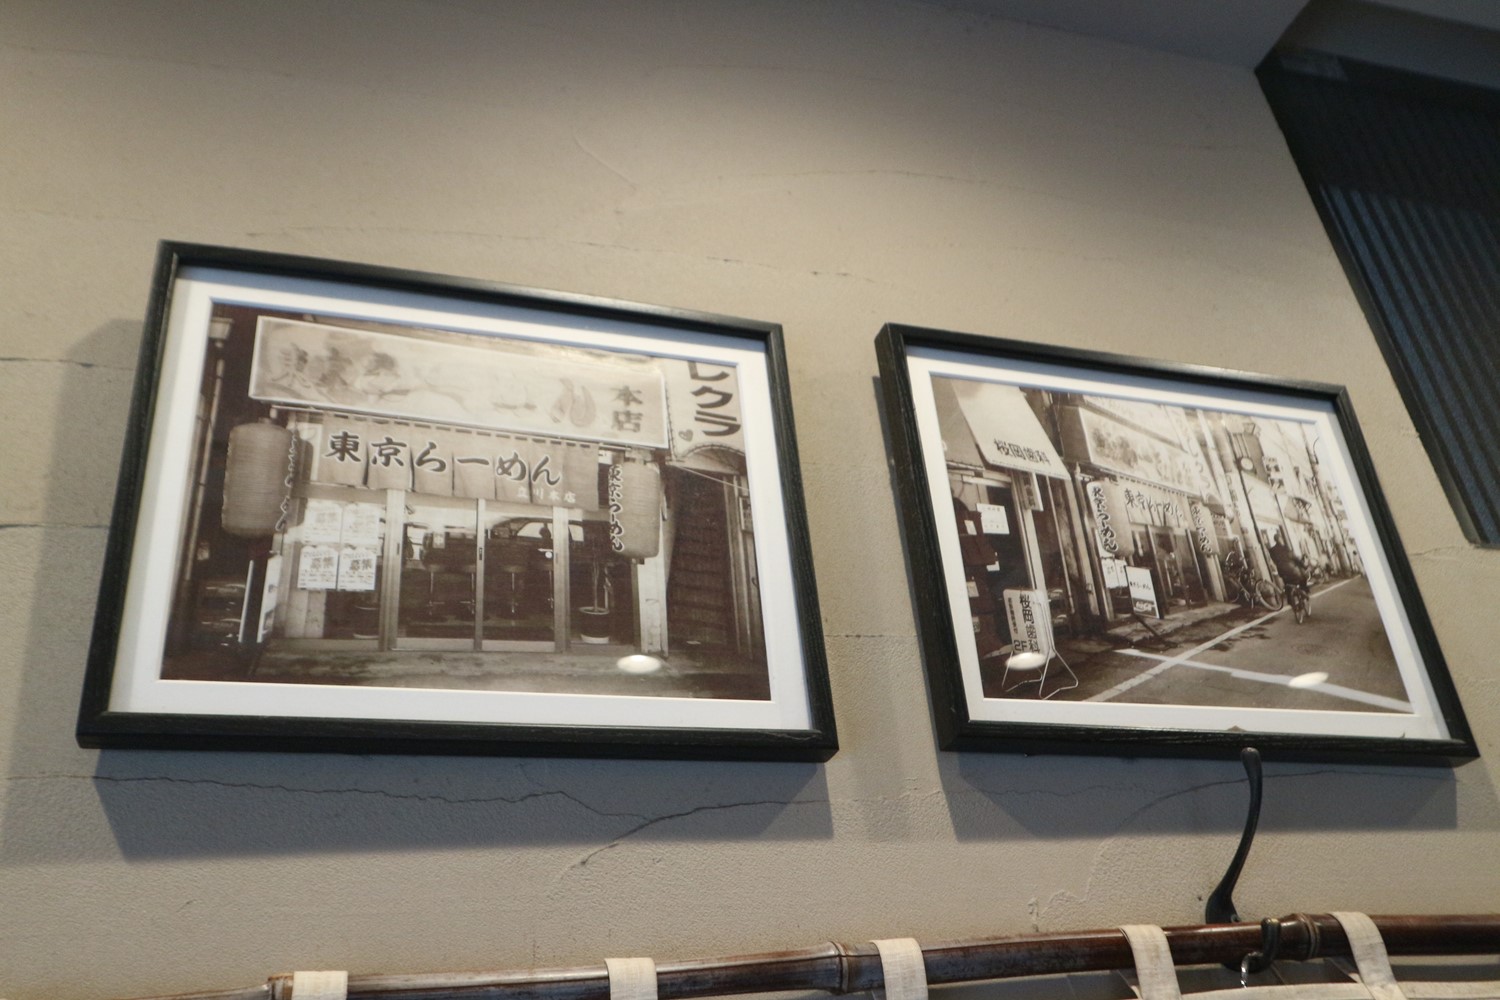 店内にかけられている白黒写真からも、店の歴史が垣間見える。